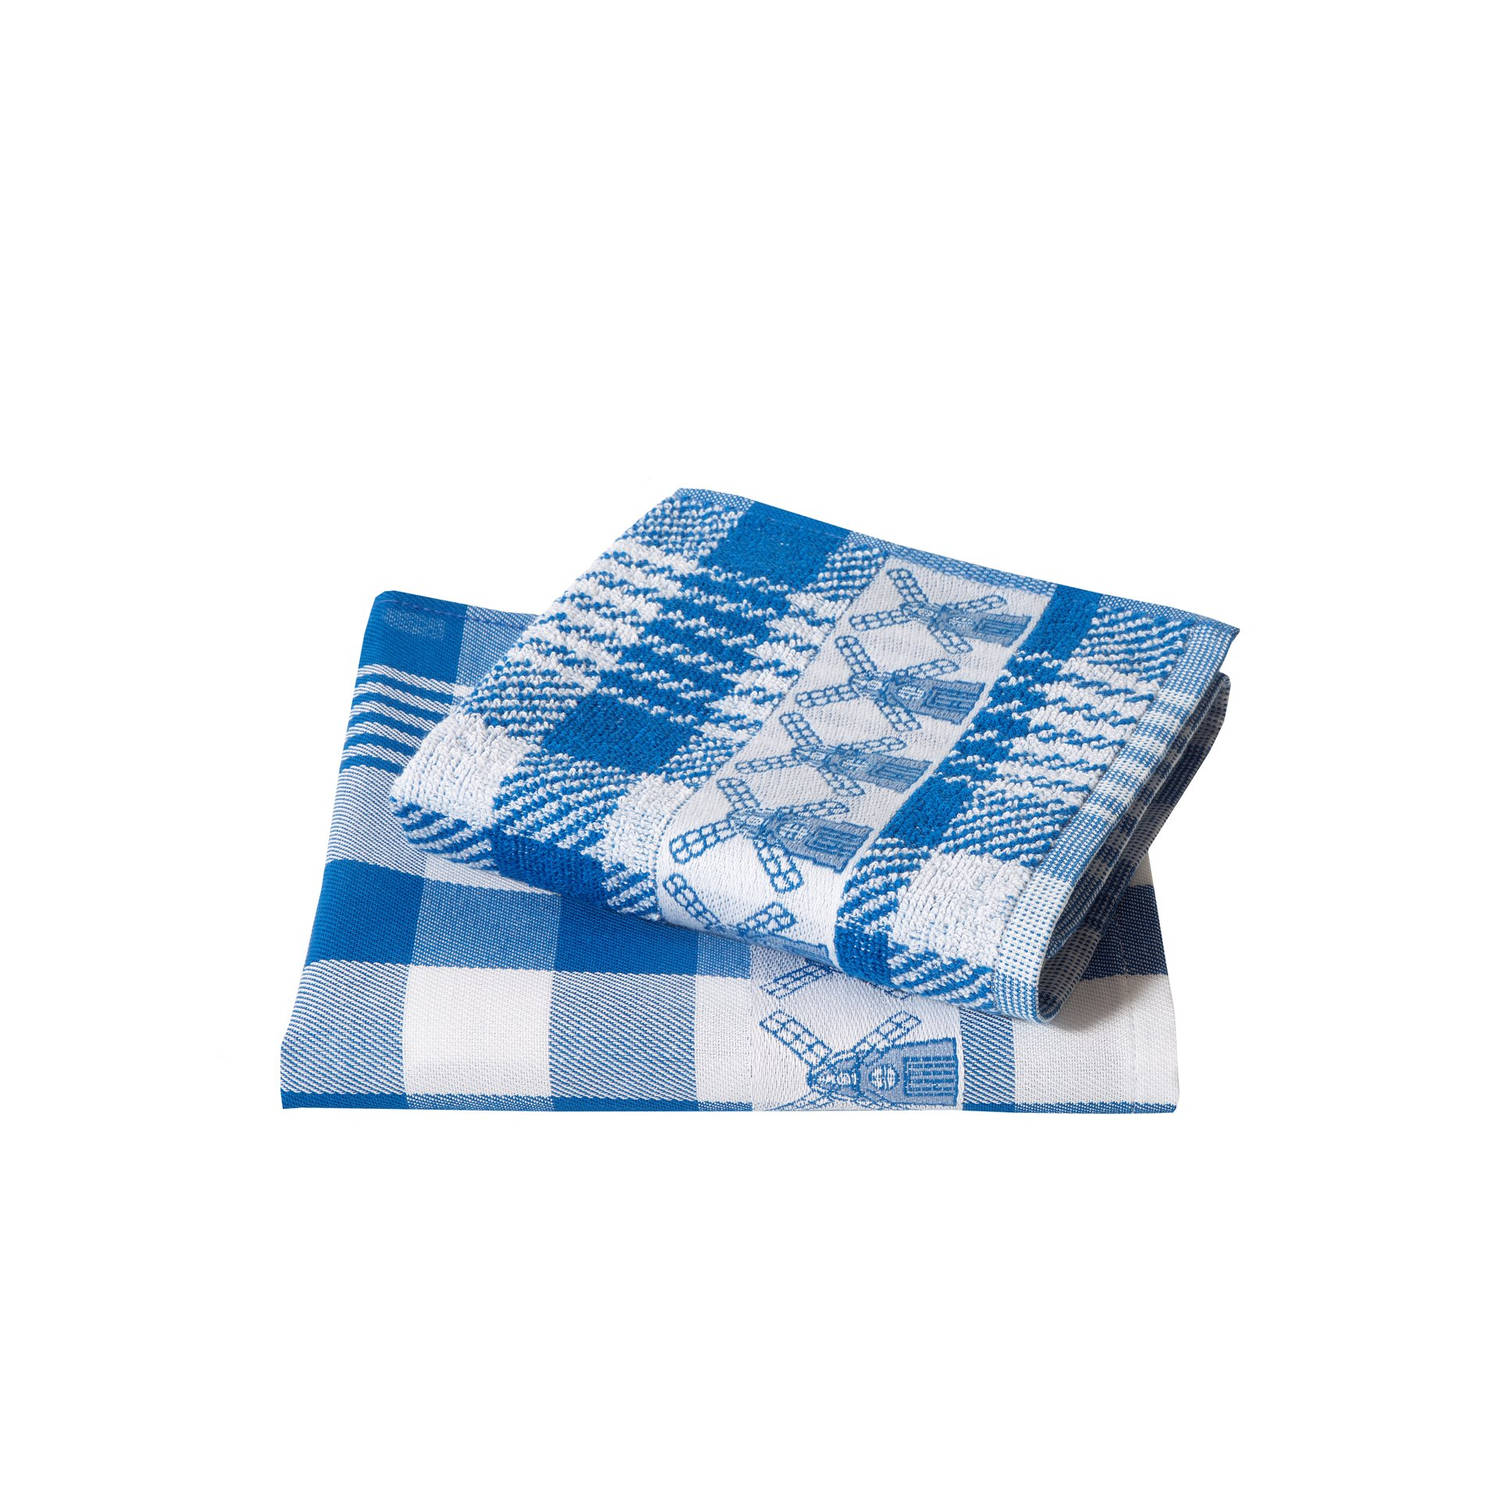 Twentse Damast Keuken Handdoeken - Hollandse Designs - Katoen - Keukendoeken Set - 6 stuks - 50x55 cm - Molen Blauw